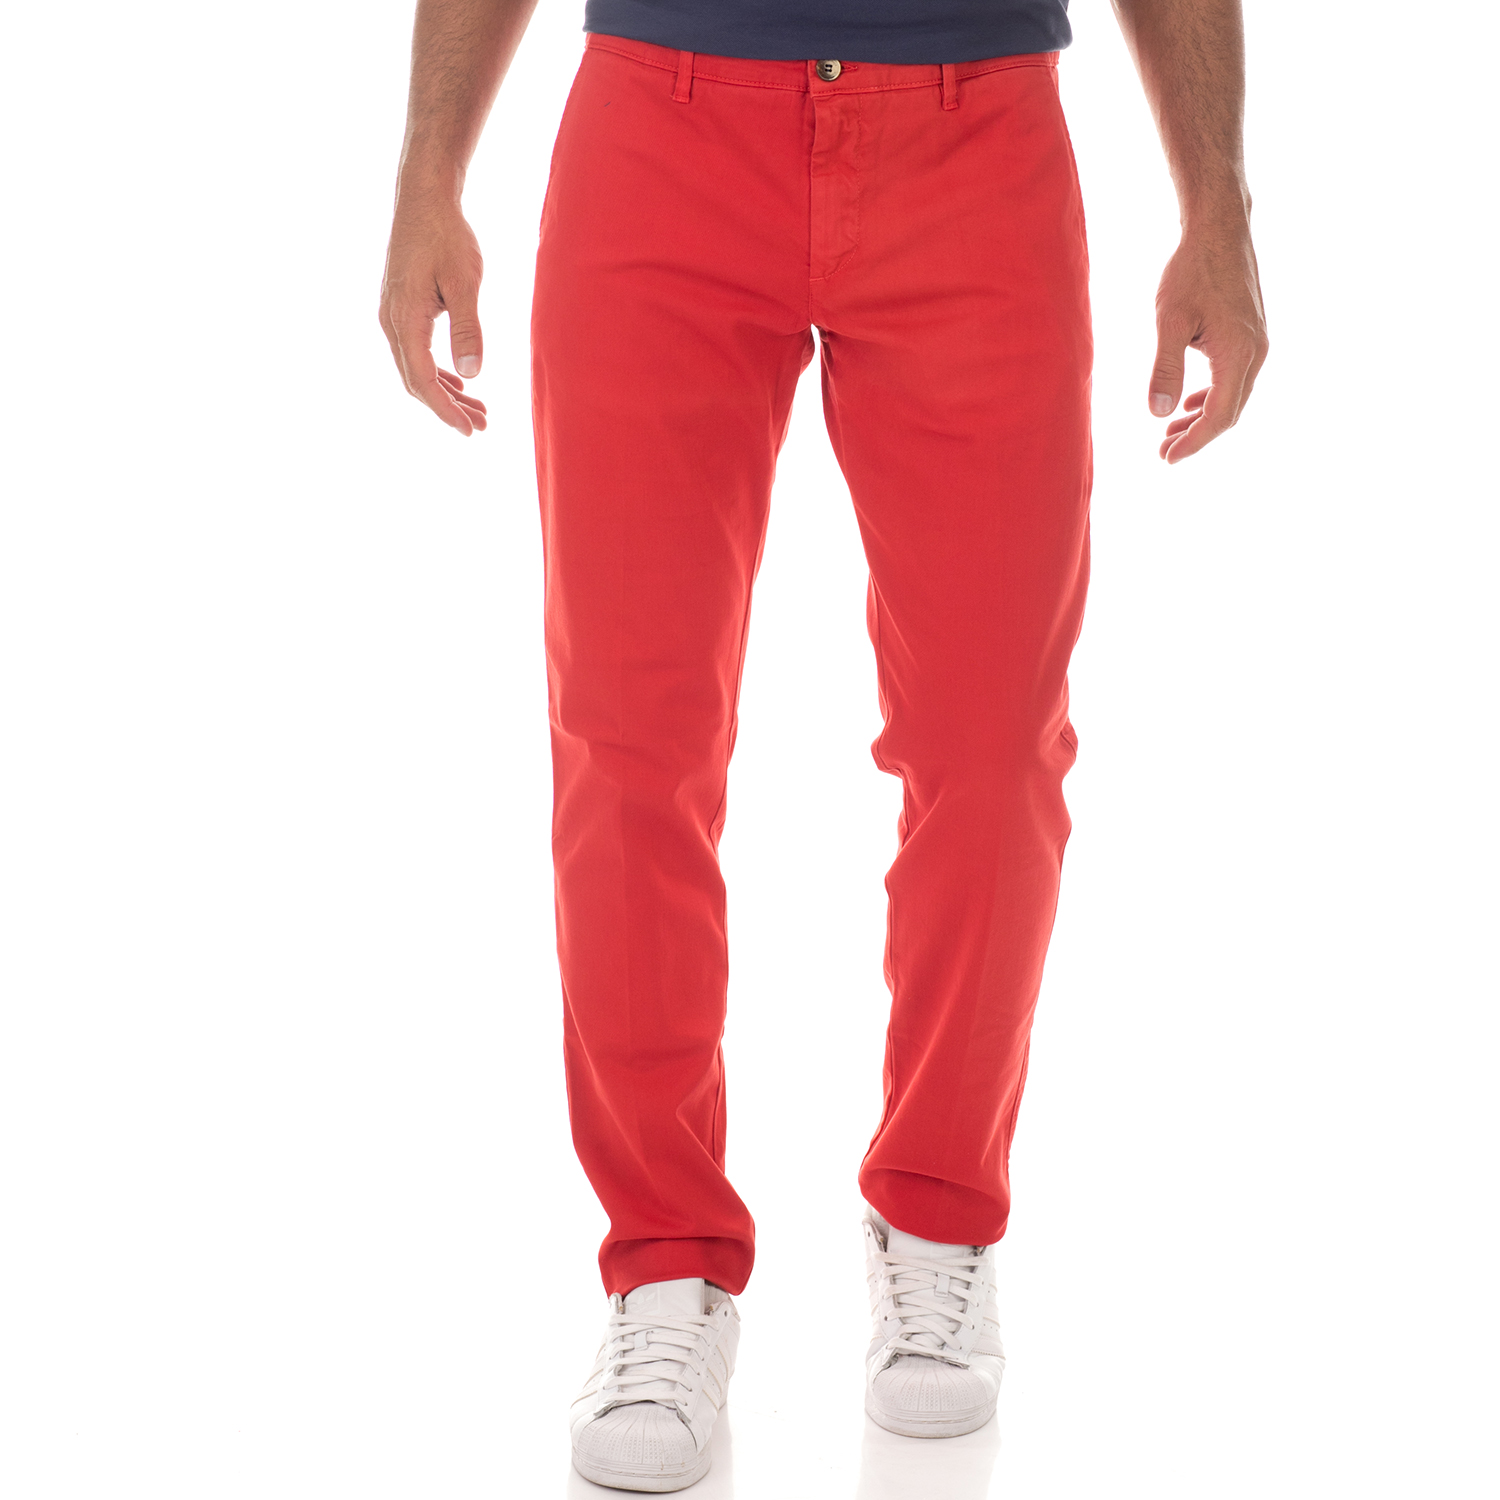 Ανδρικά/Ρούχα/Παντελόνια/Chinos BROOKSFIELD - Ανδρικό chino παντελόνι BROOKSFIELD STANDARD FIT κόκκινο